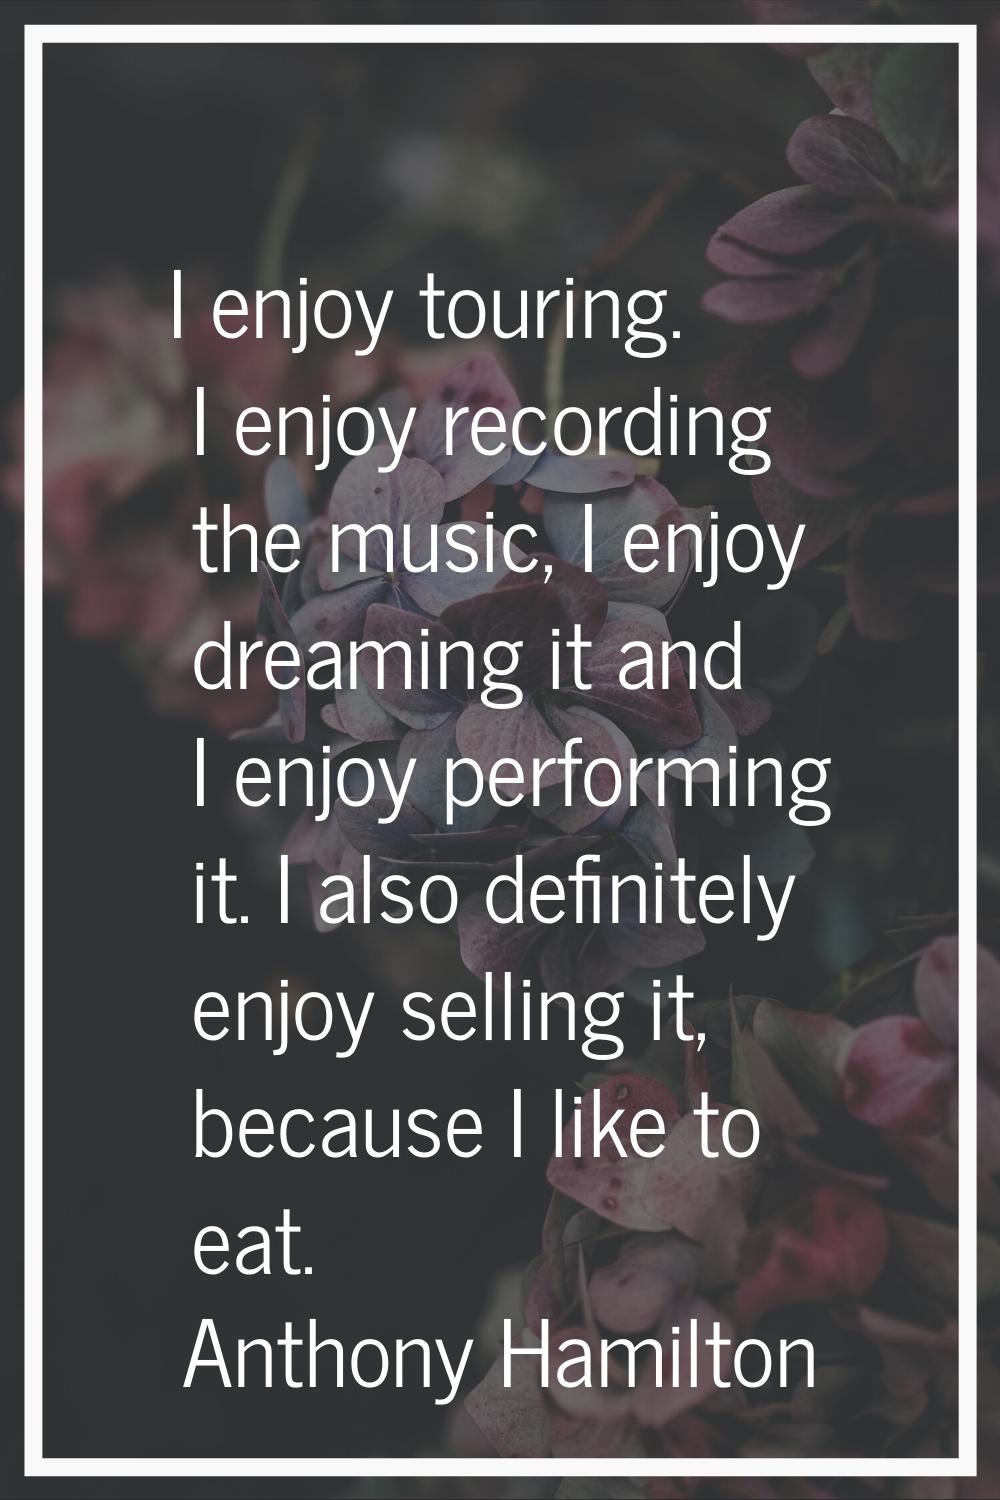 I enjoy touring. I enjoy recording the music, I enjoy dreaming it and I enjoy performing it. I also